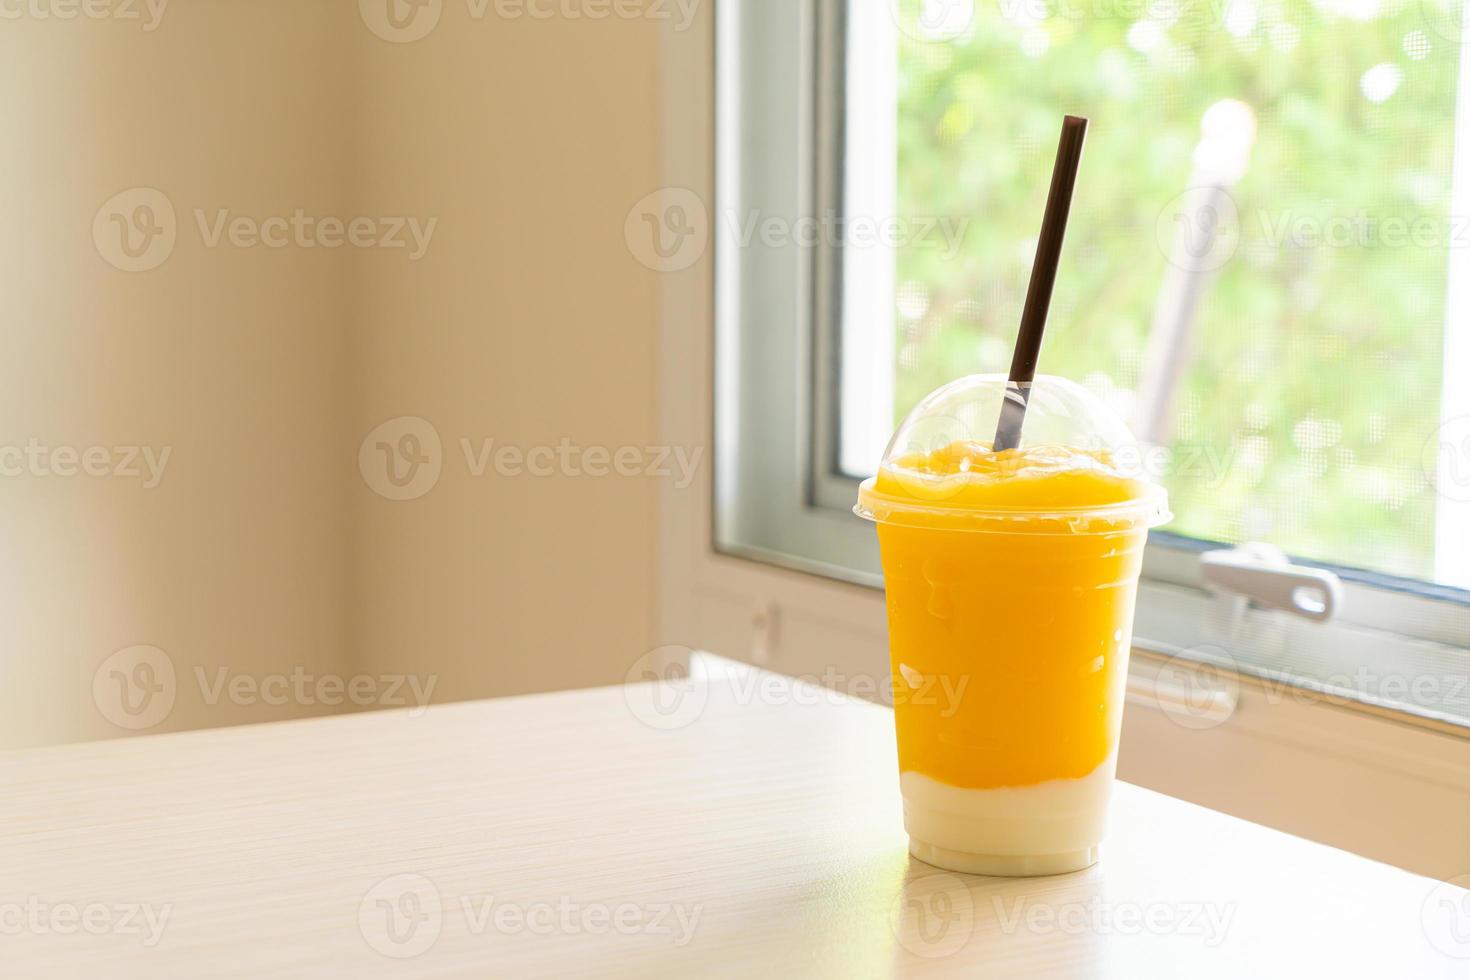 smoothies aux fruits de mangue fraîche avec verre de yaourt photo